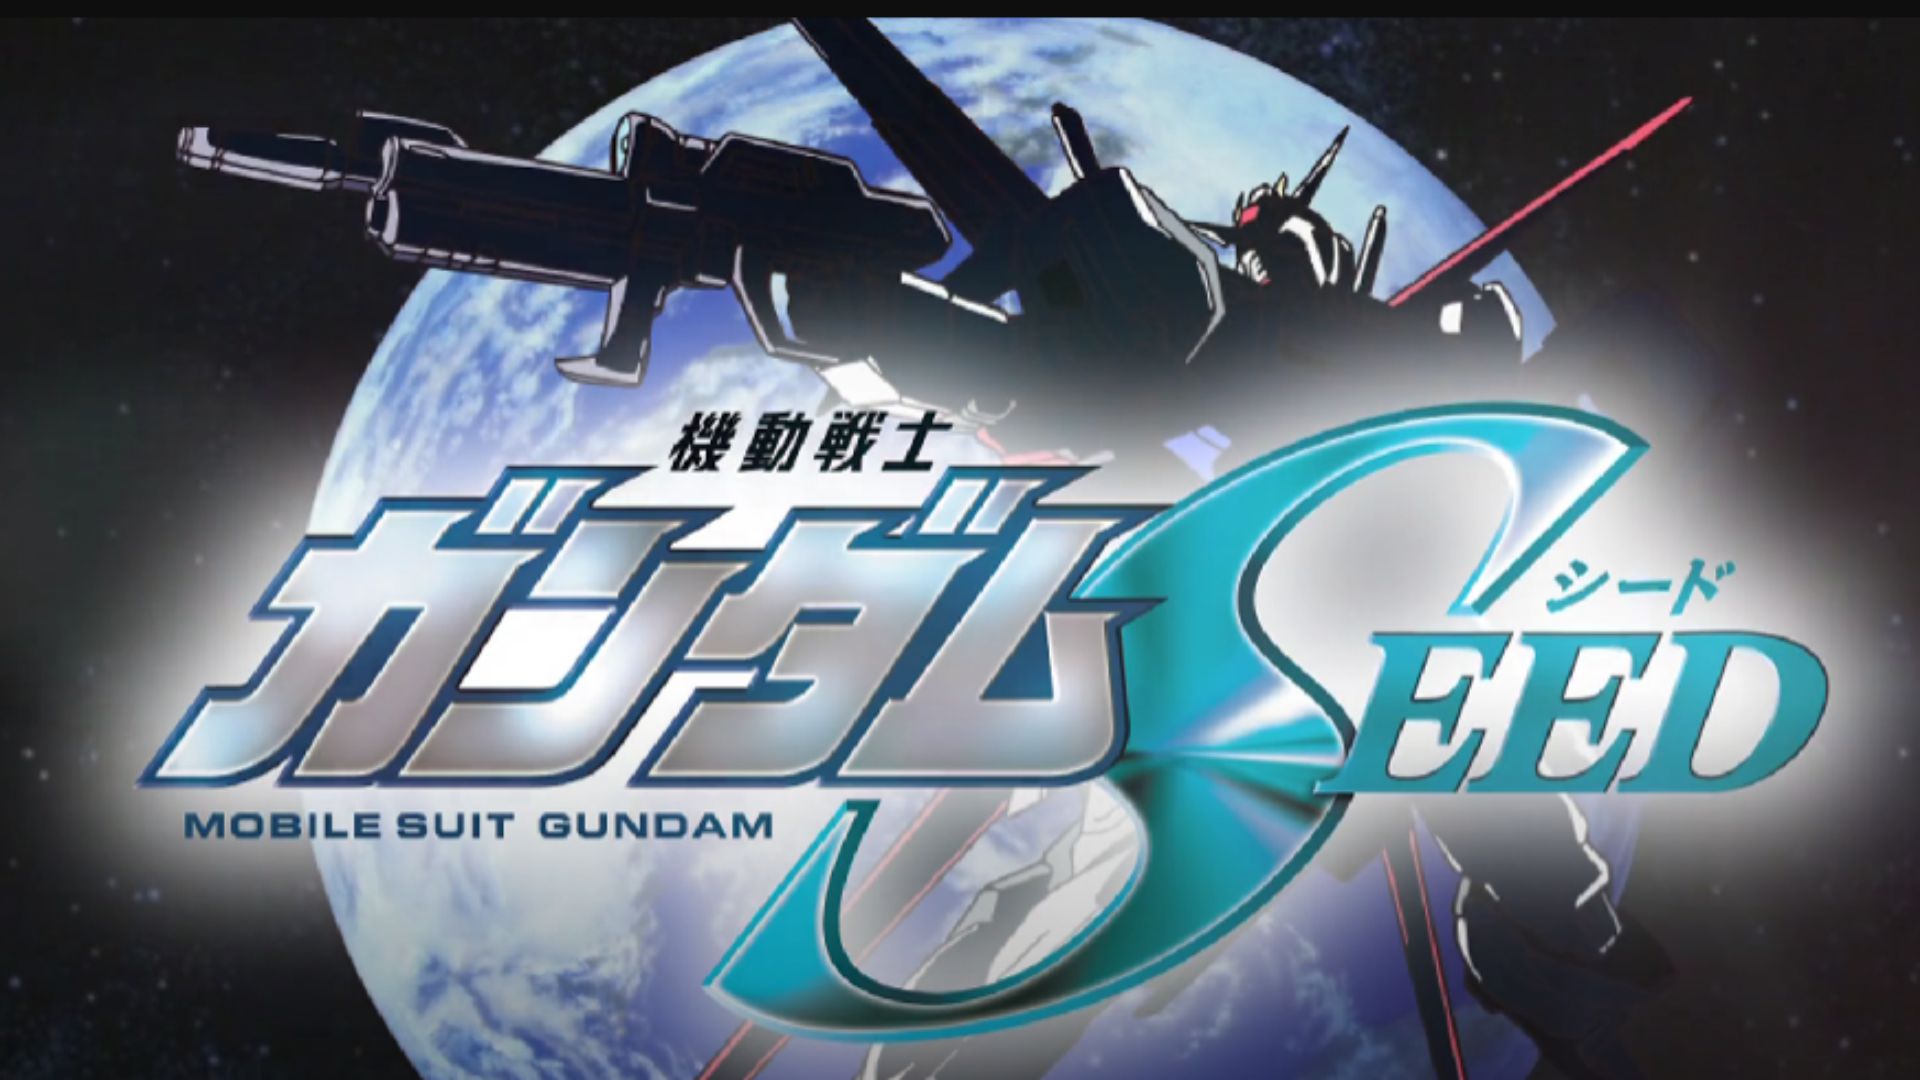 Gundam Seed FREEDOM